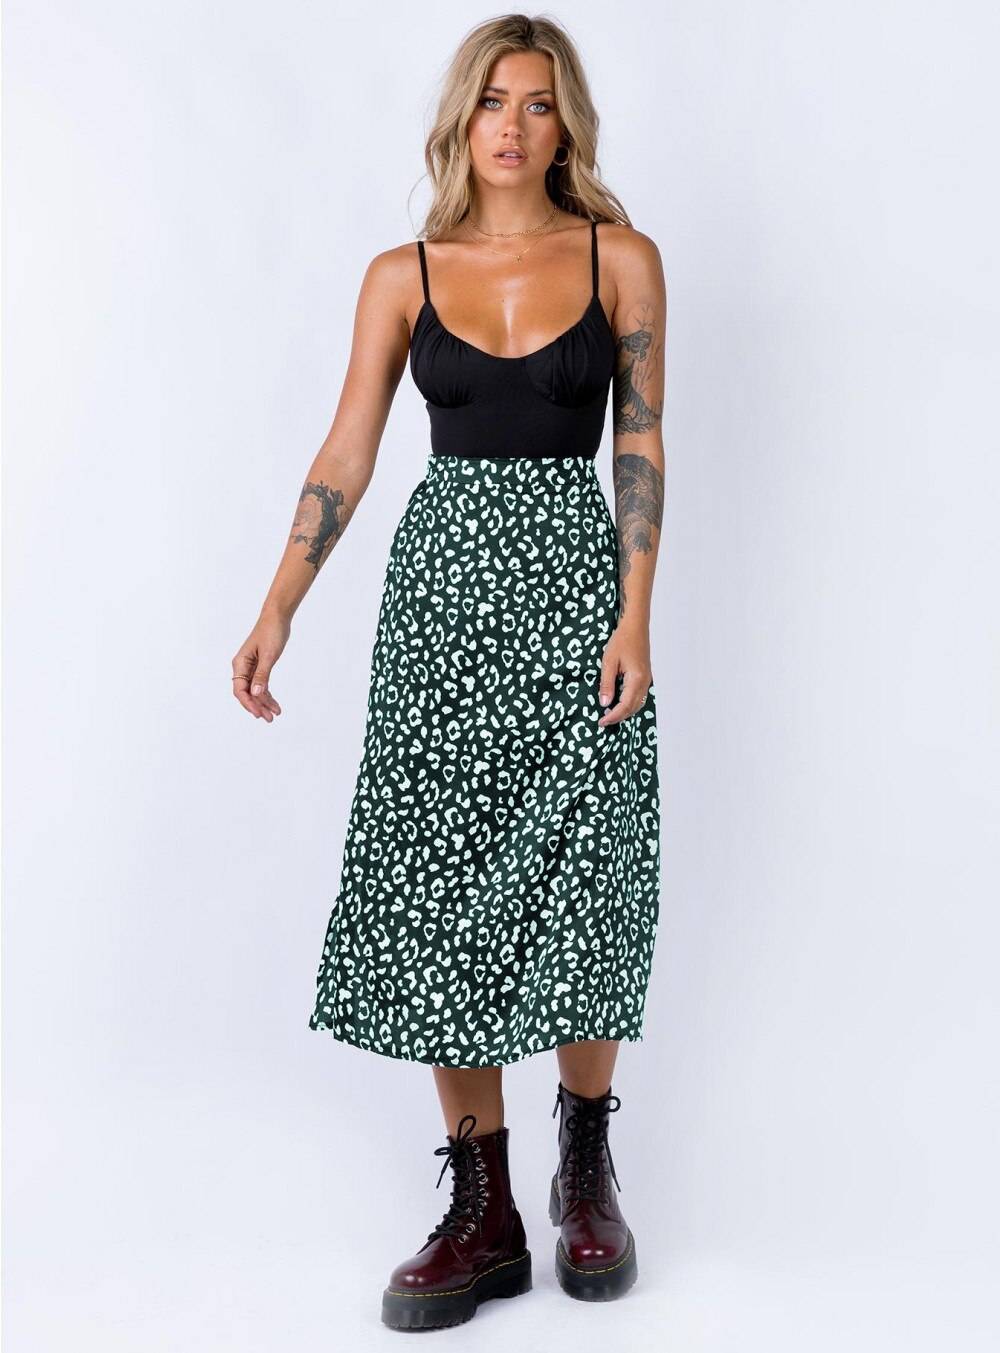 Leopard Printed Split Skirt